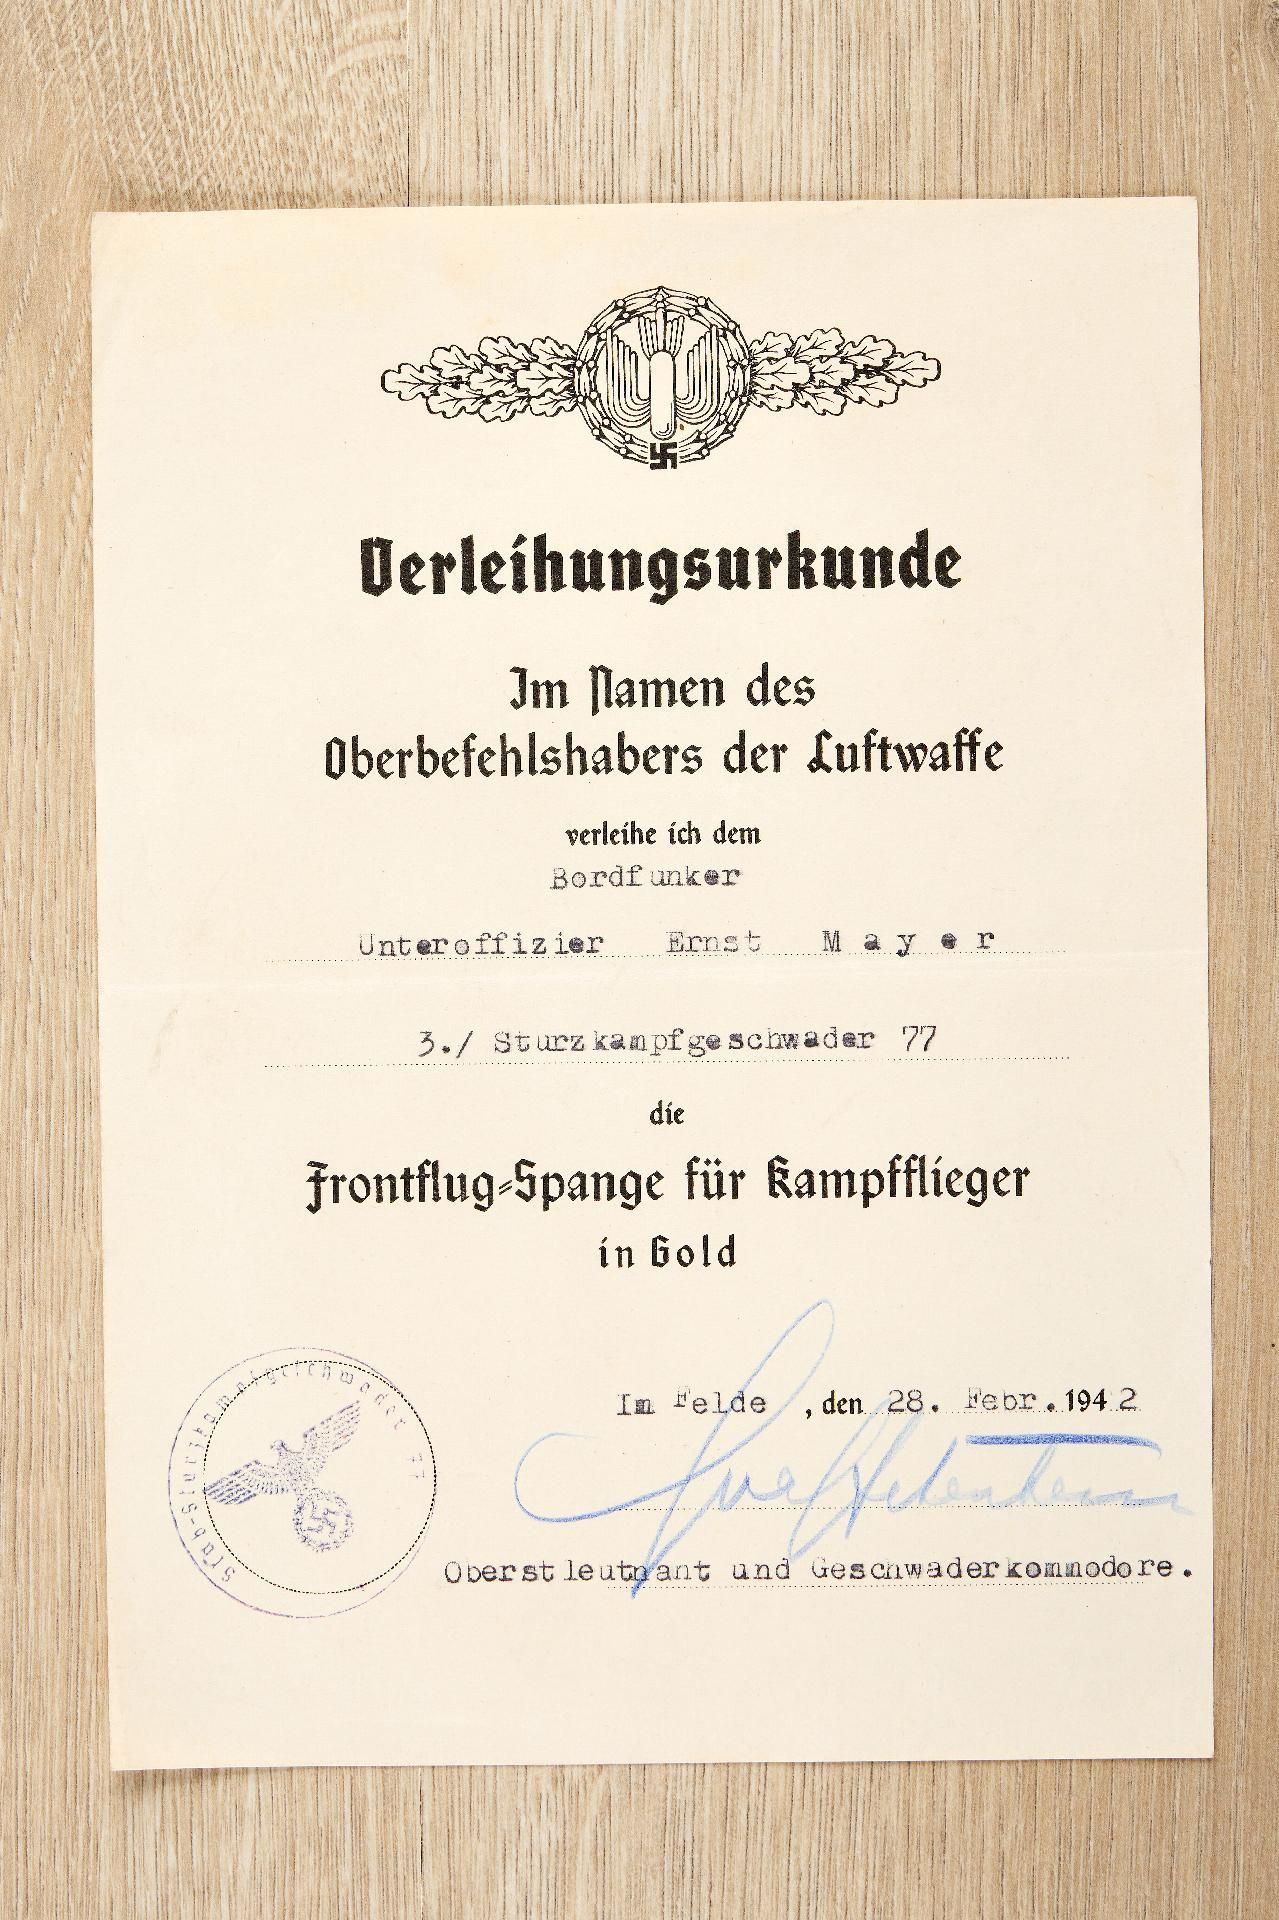 Allgemein : Nachlass des Feldwebels Ernst Meyer, 1./Sturzkampfgeschwader 77 - Image 44 of 55